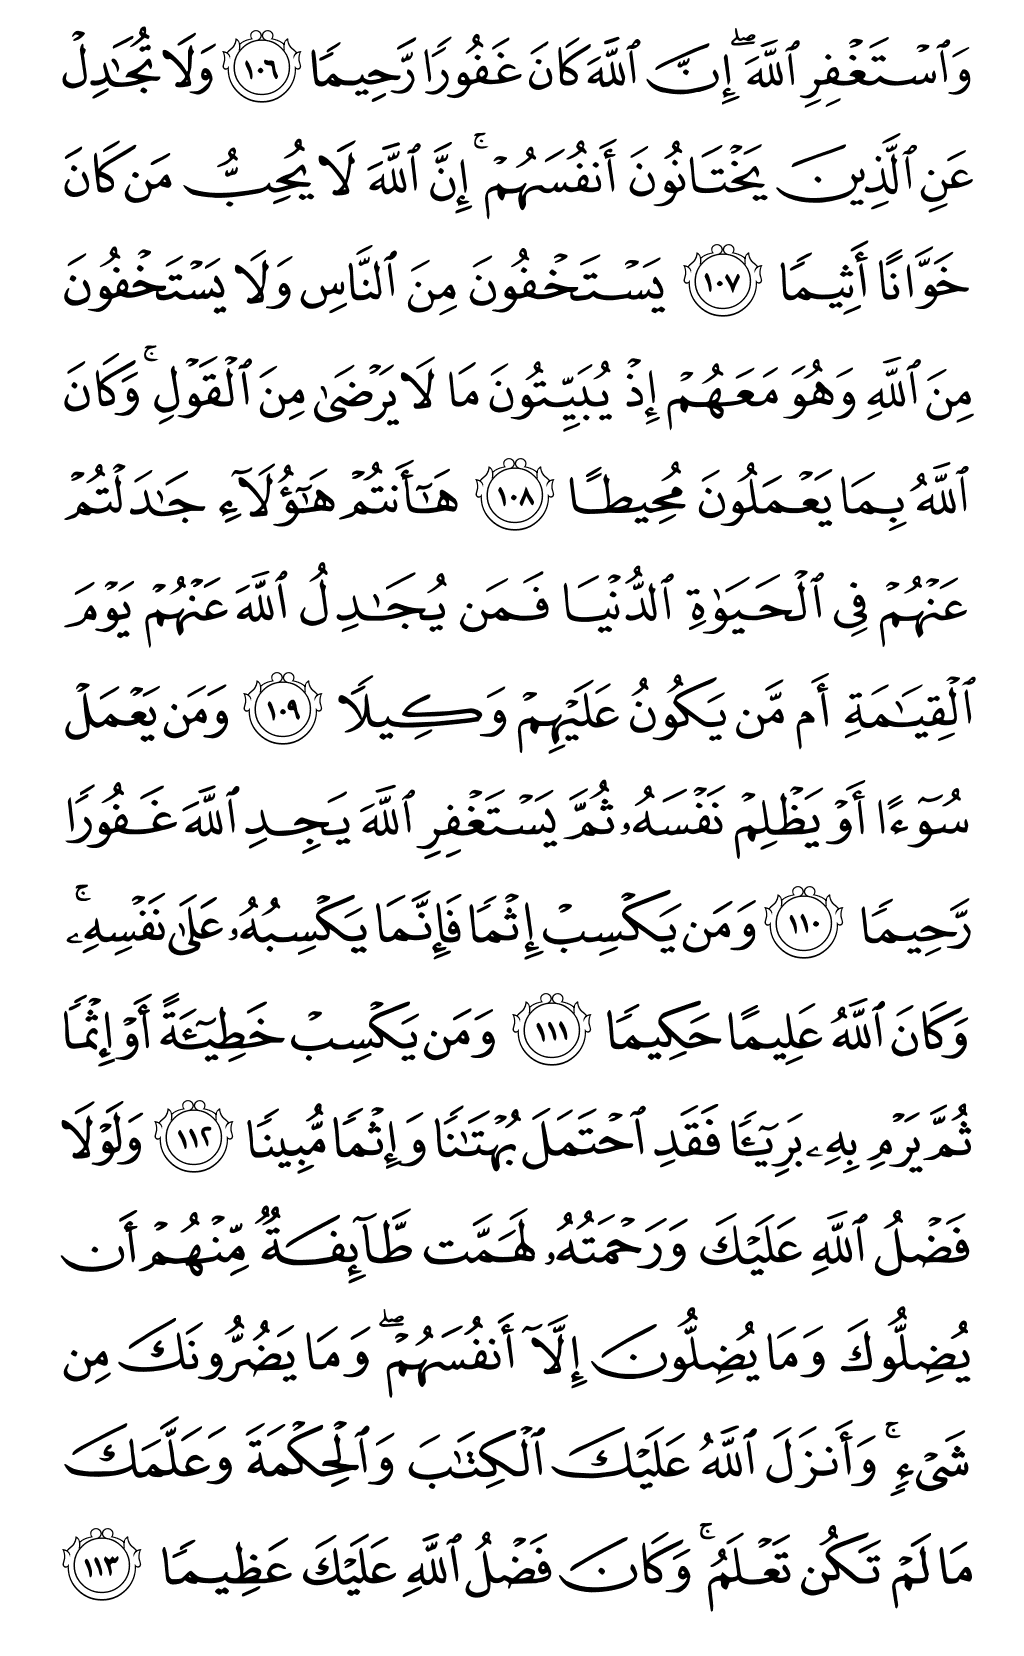 الصفحة رقم 96 من القرآن الكريم